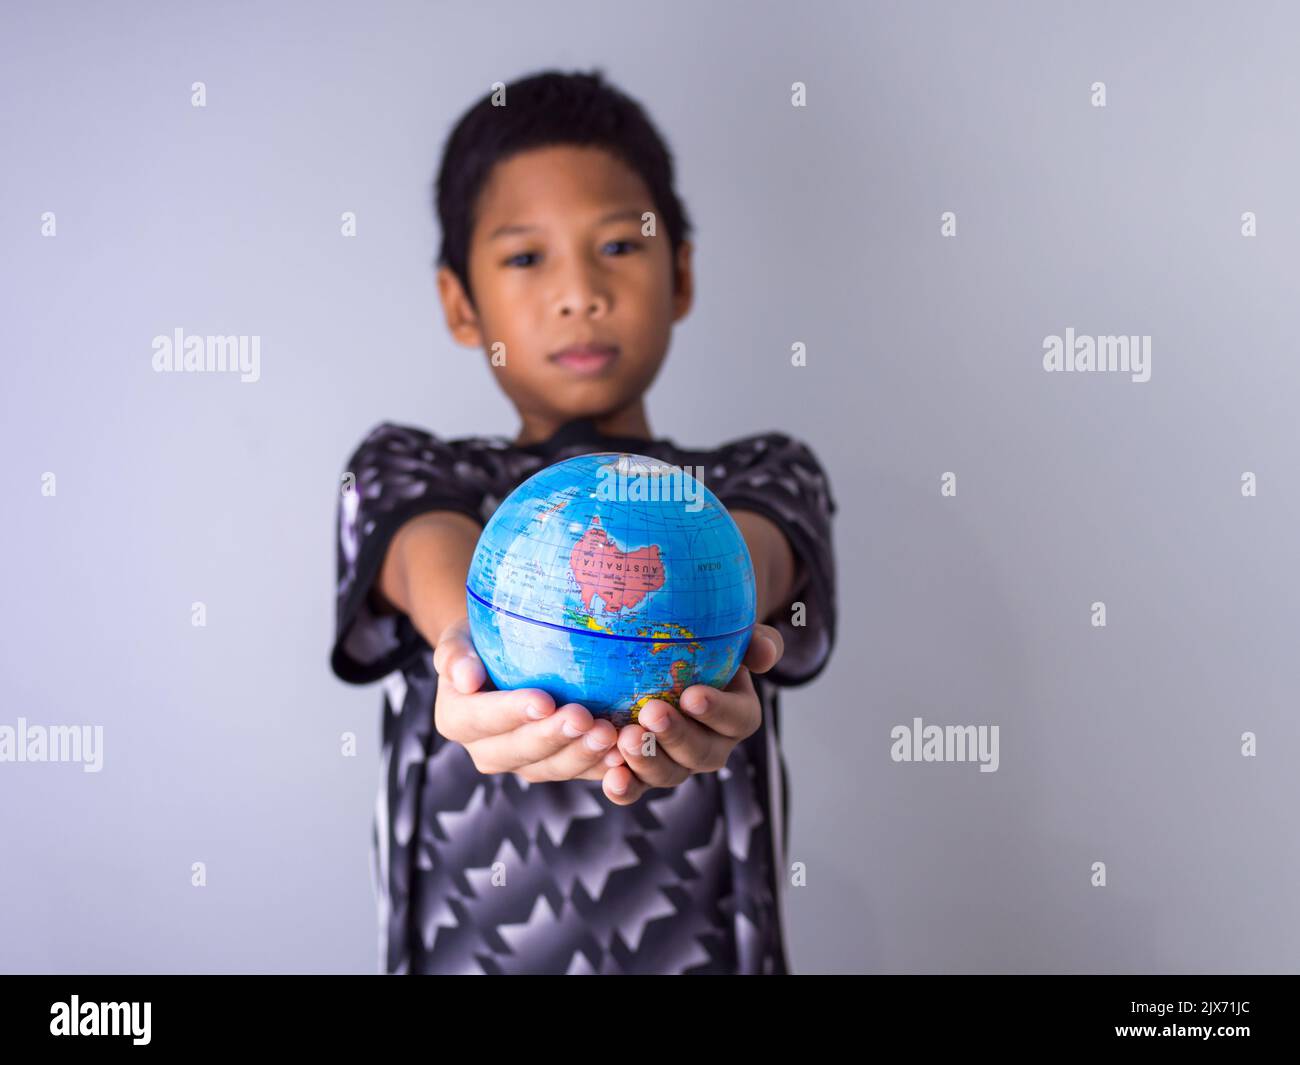 Garçon tenant un globe se démarquer devant montrer la puissance de la nouvelle génération pour continuer à développer notre monde. Banque D'Images